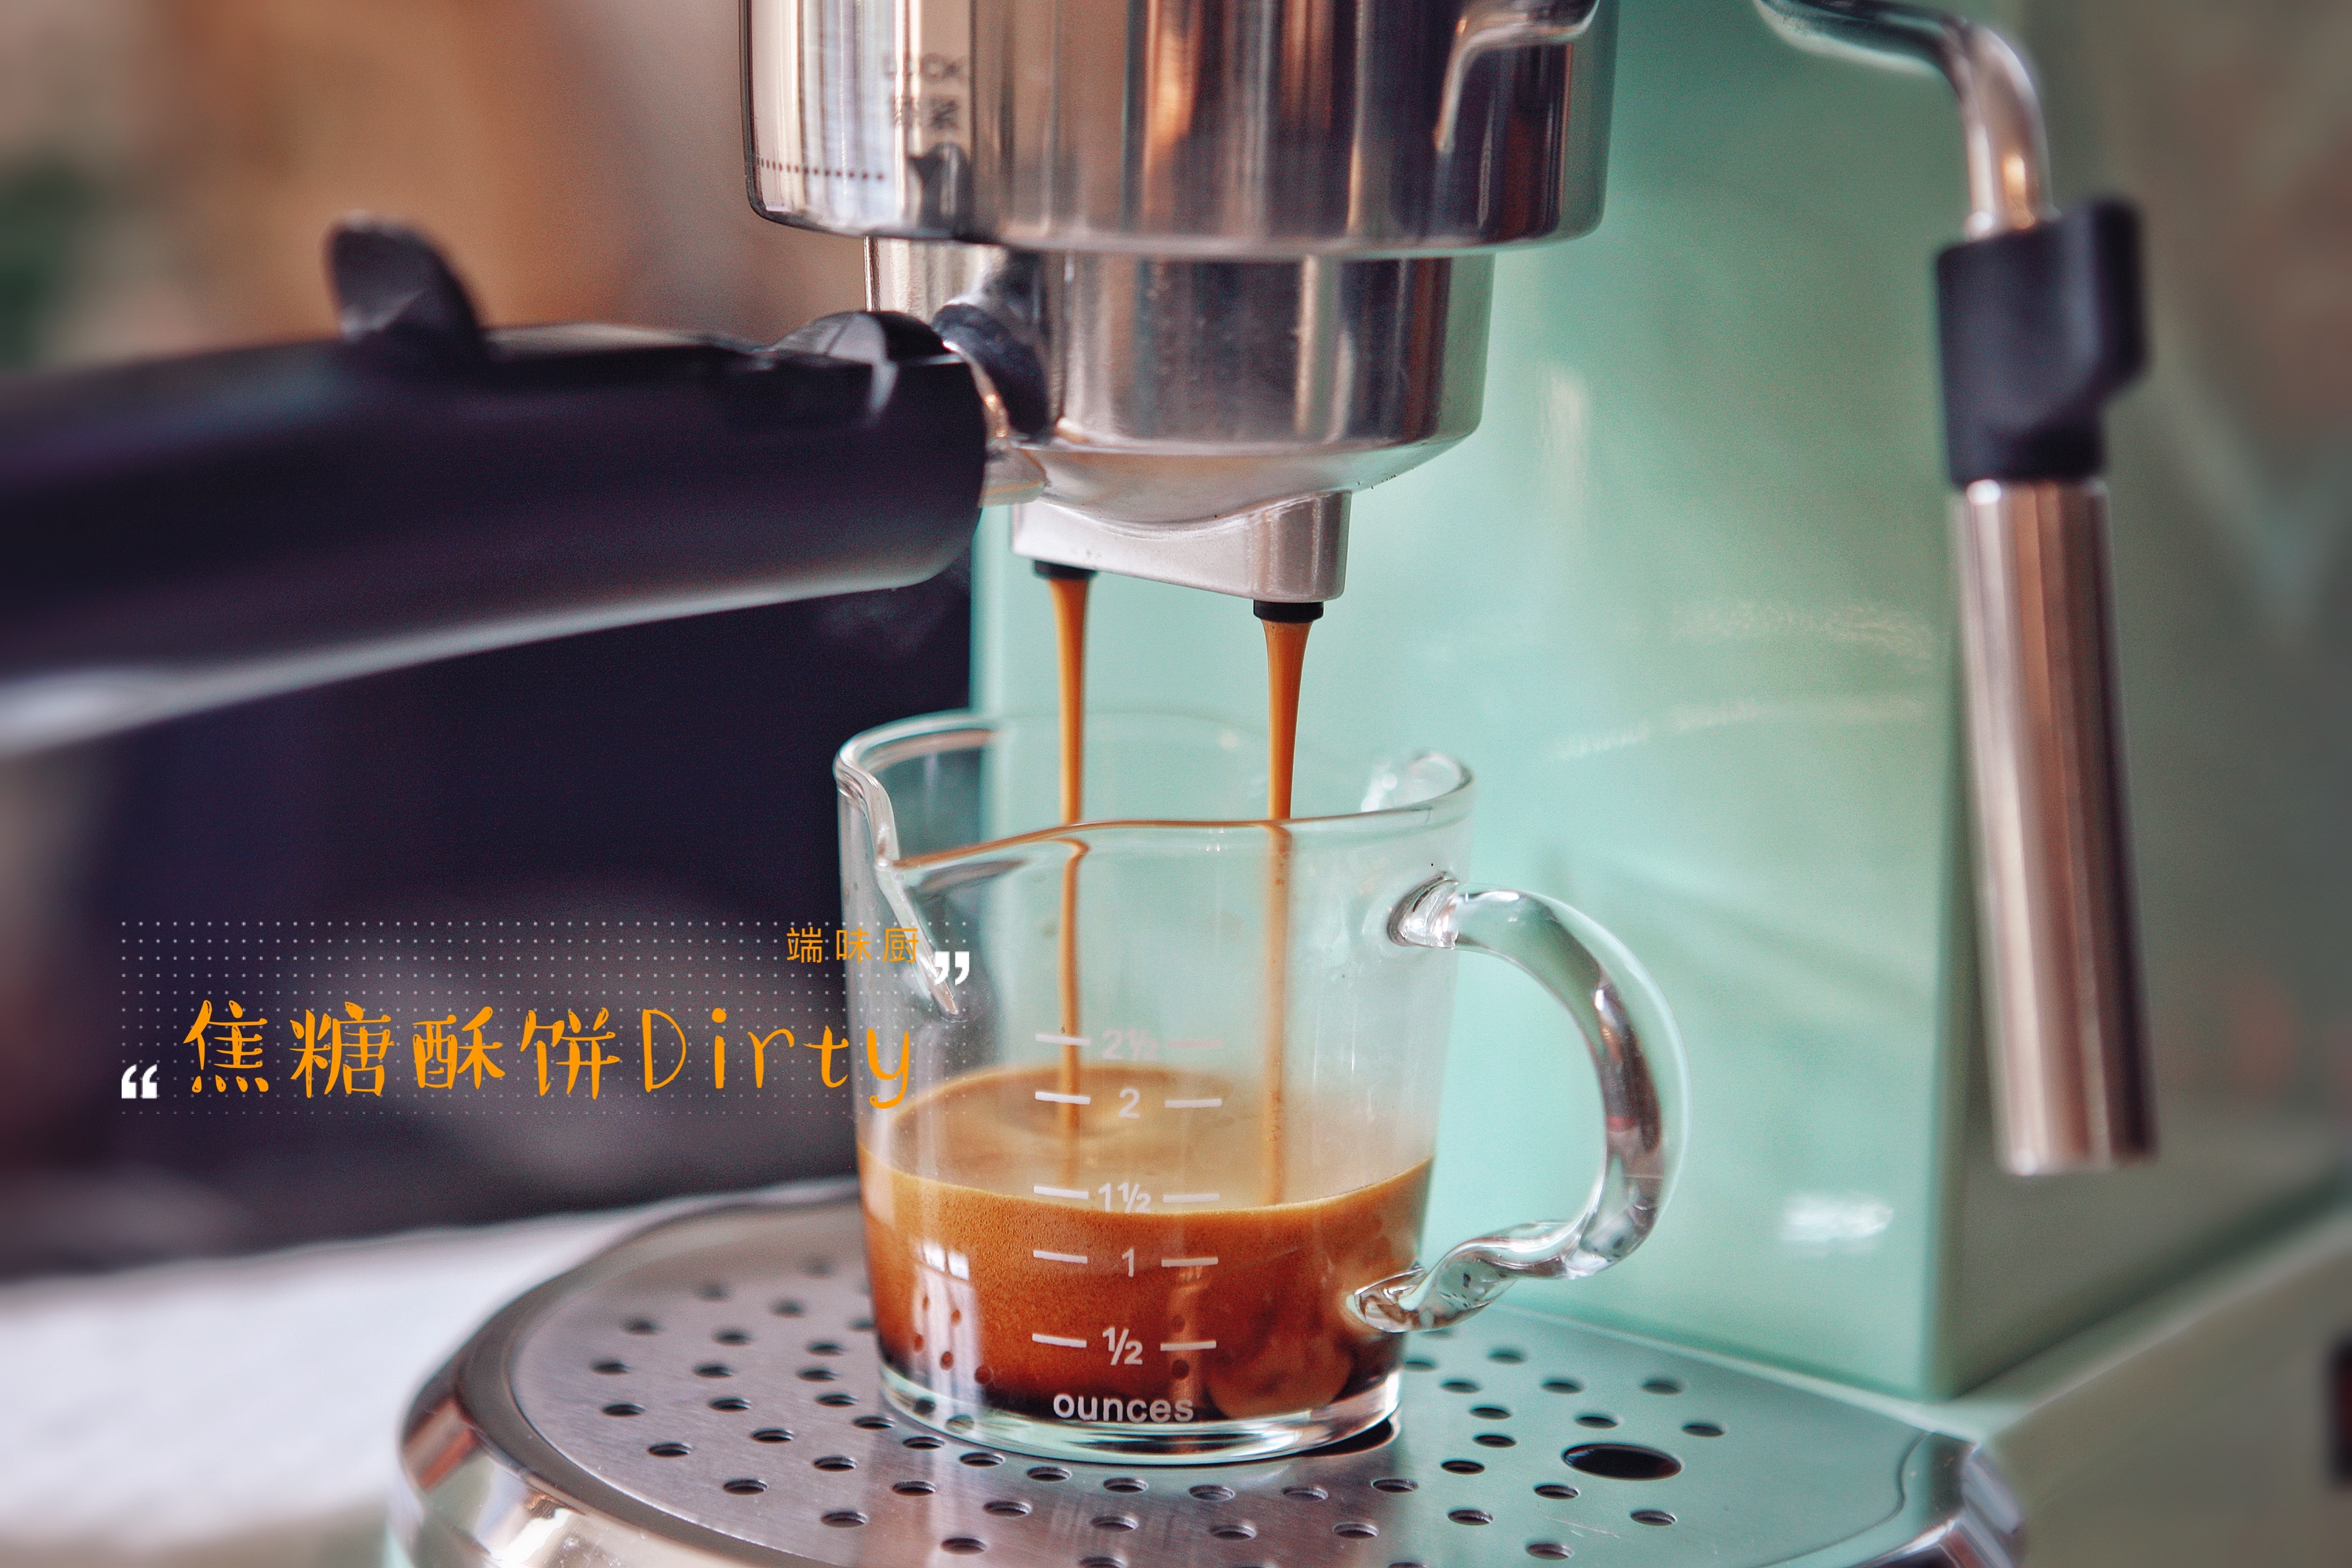 马克西姆咖啡机食谱——风靡整个韩国的网红咖啡——肉桂焦糖酥饼Dirty的做法 步骤10